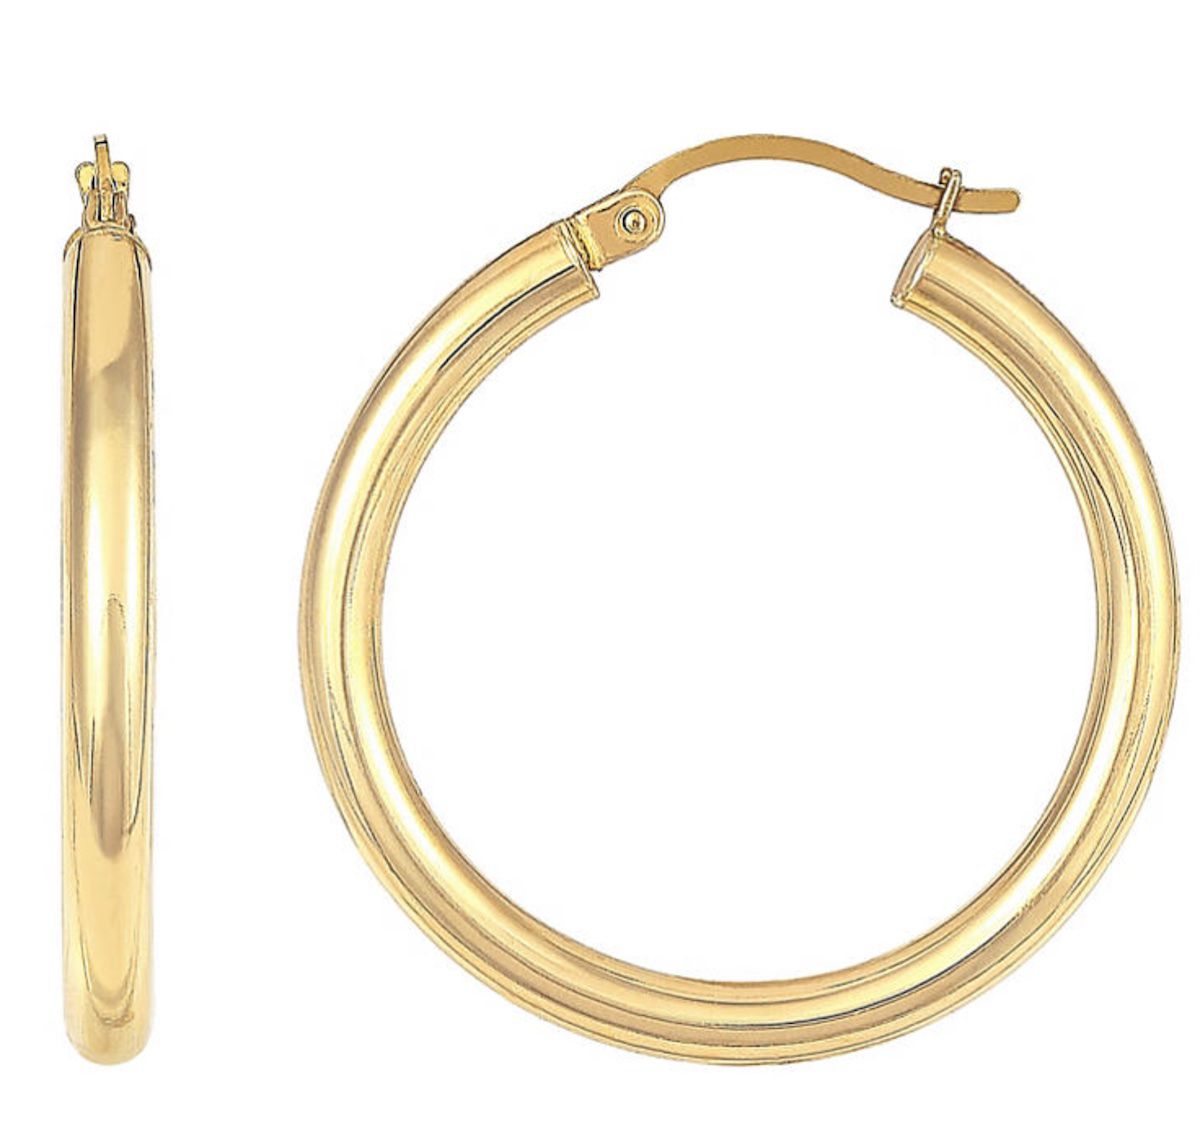 Buy It! Sam's Club 14k Gold Hoop Earrings, $99, samsclub.com https://www.samsclub.com/p/14ky-earrings-3x30mm-polished-hoop/prod8900139